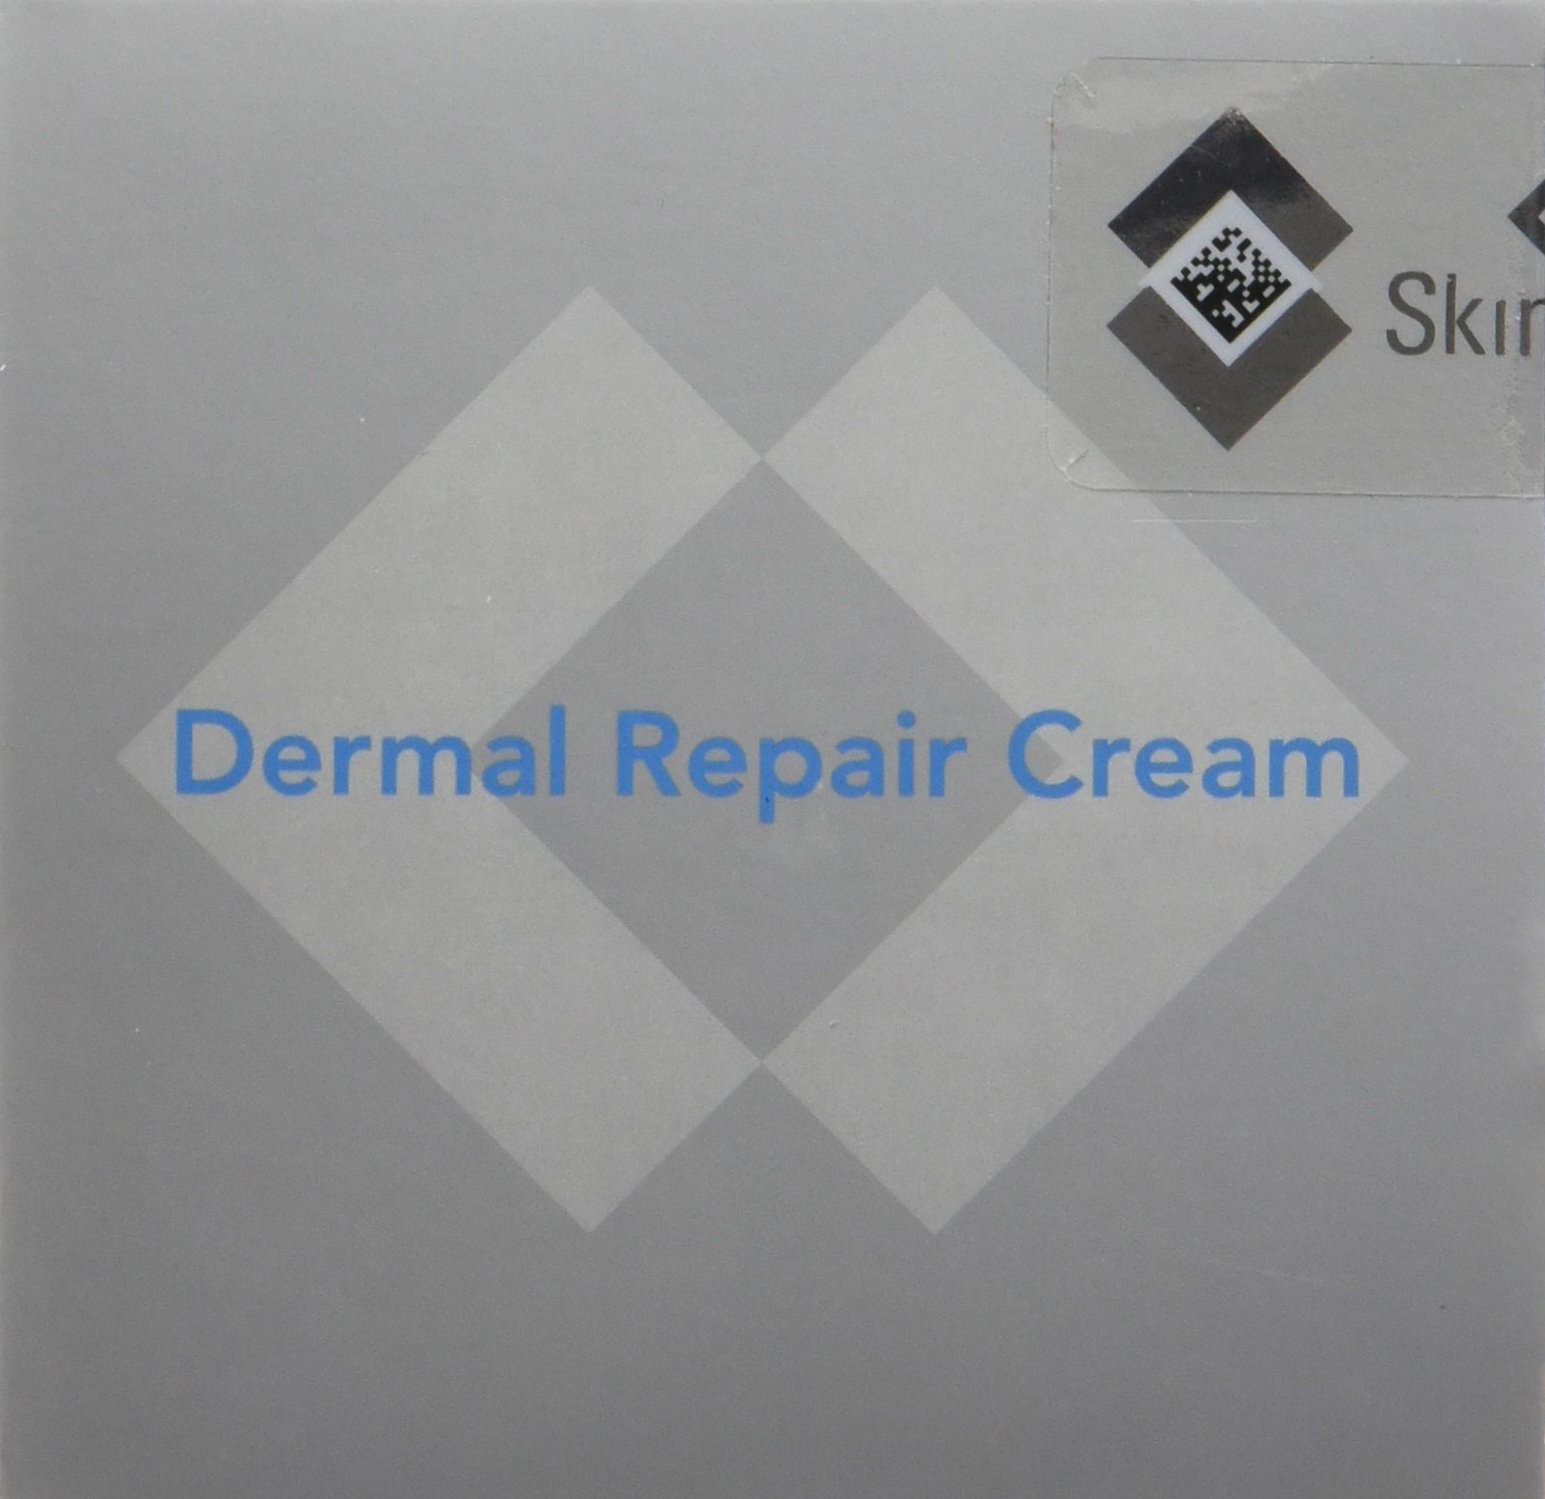 SkinMedica Dermal Repair Cream, 1.7 Oz